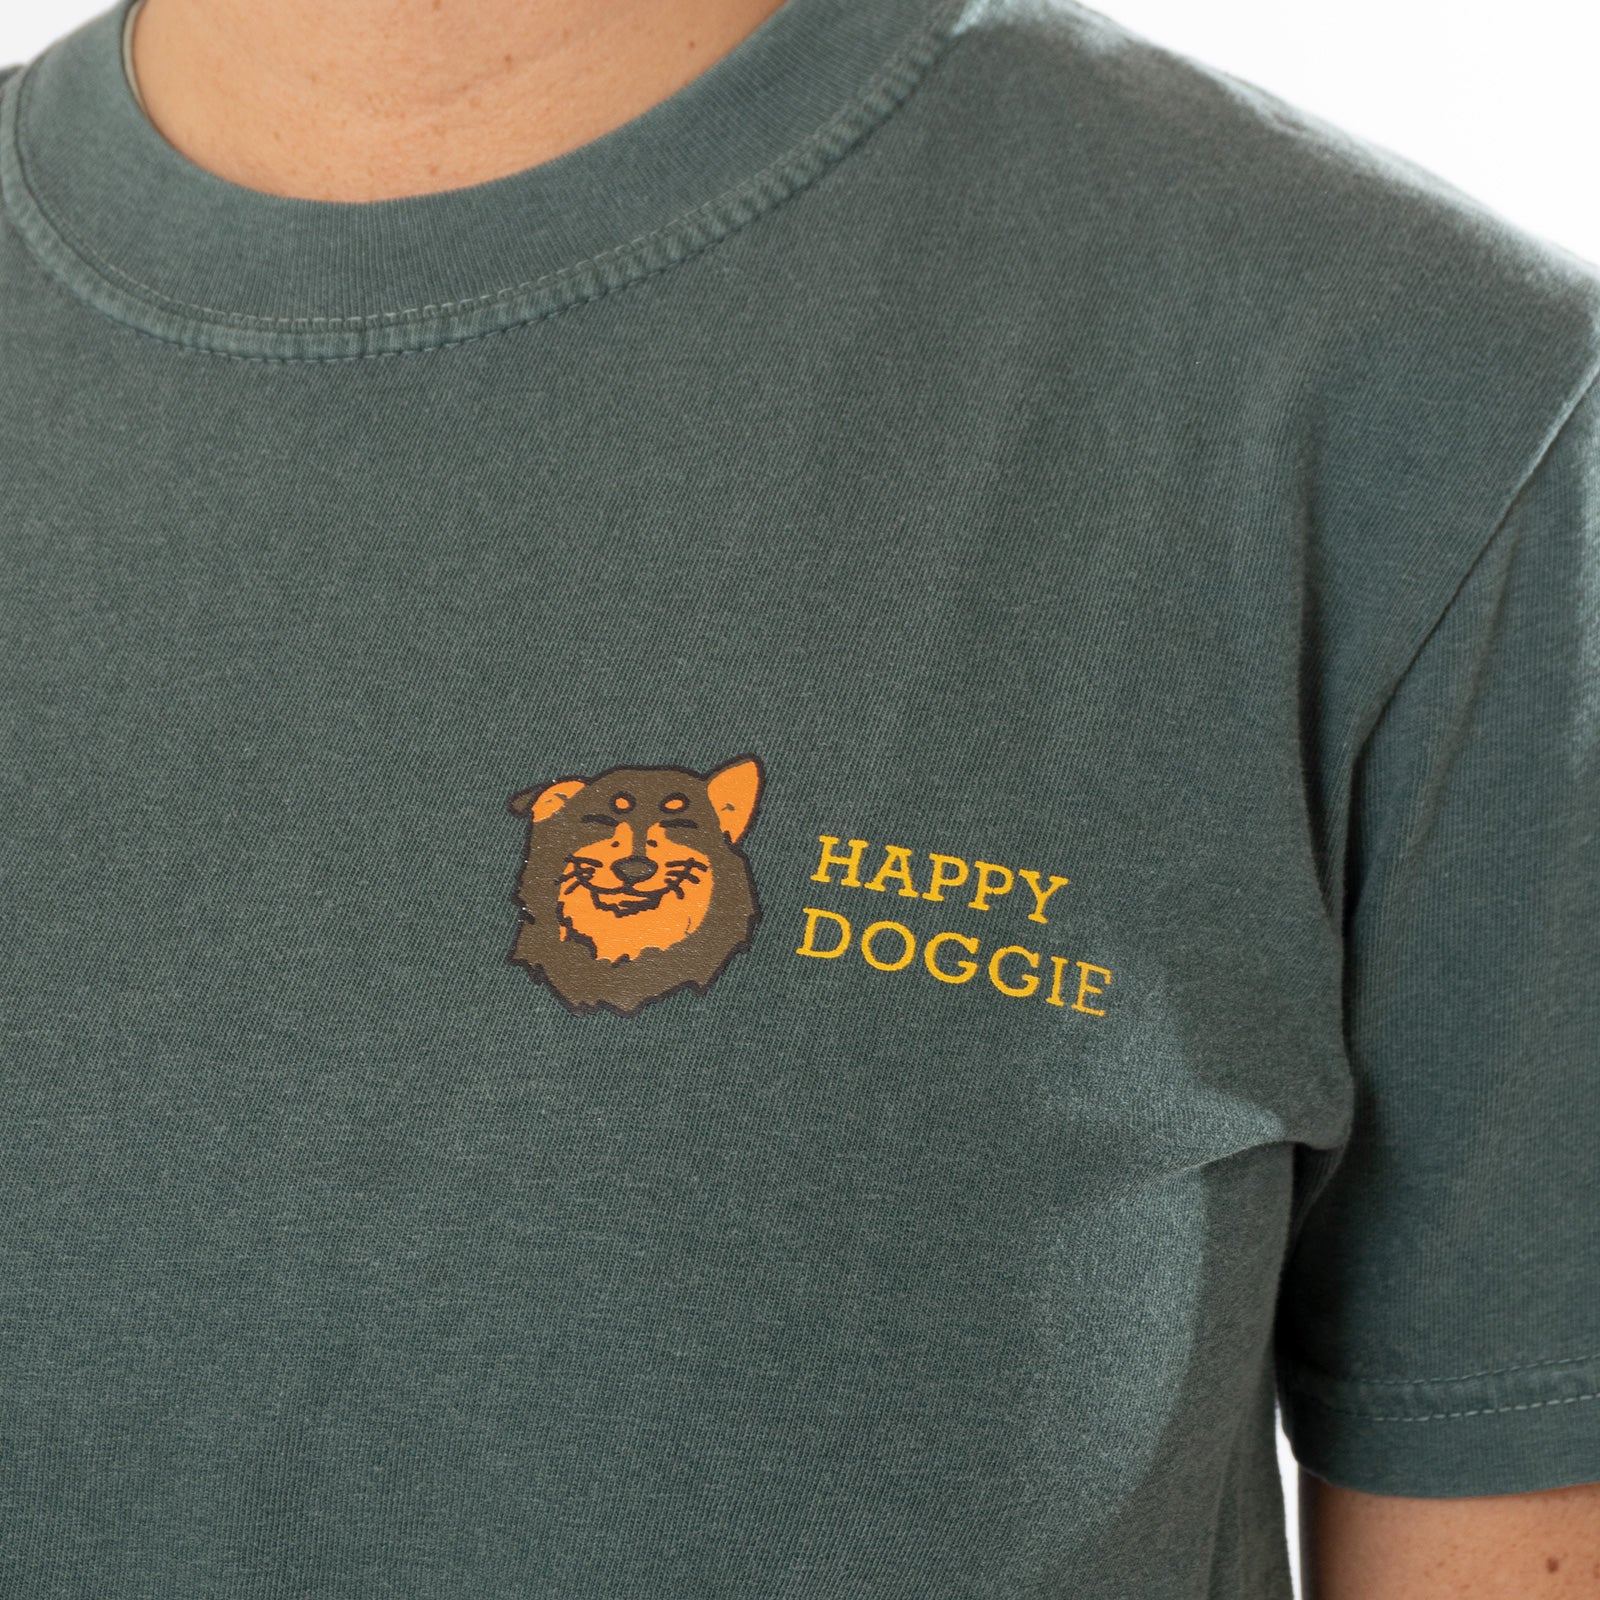 Camiseta "Happy Doggie"